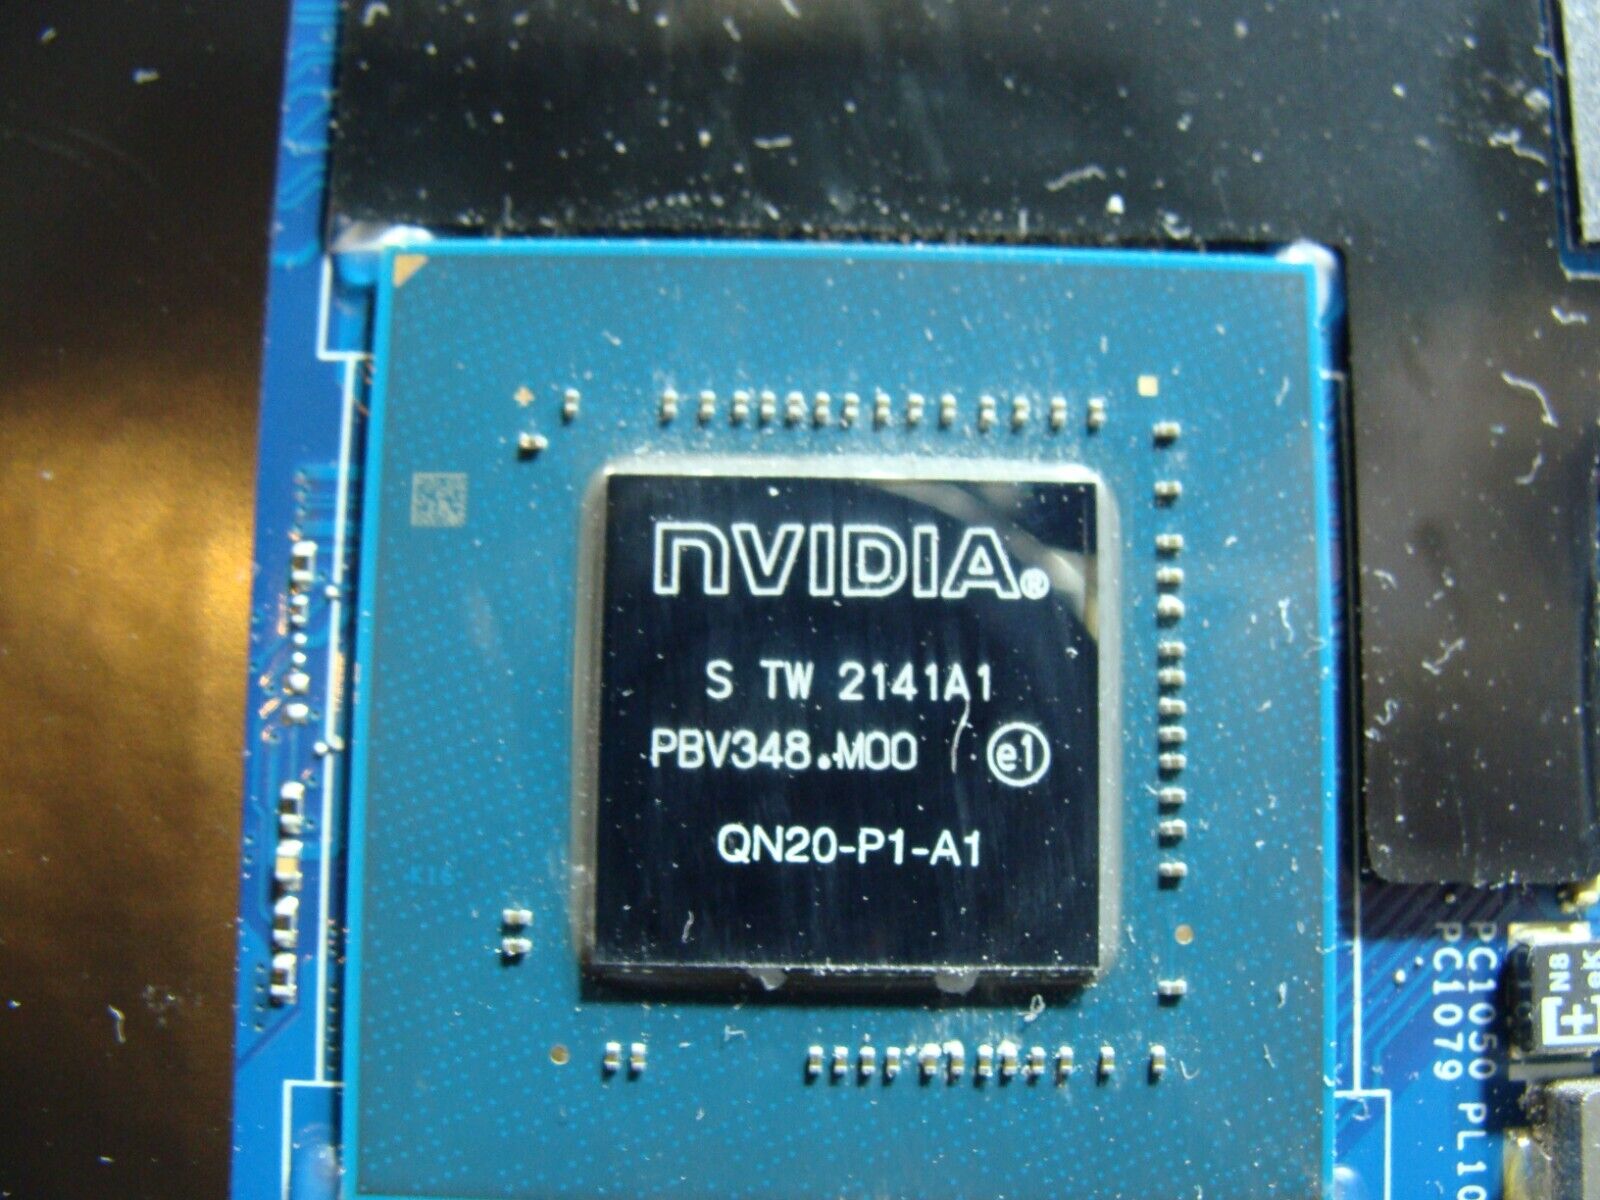 Dell Precision 15.6” 5560 i7-11850H 2.5GHz Nvidia T1200 4GB Motherboard WPMMN